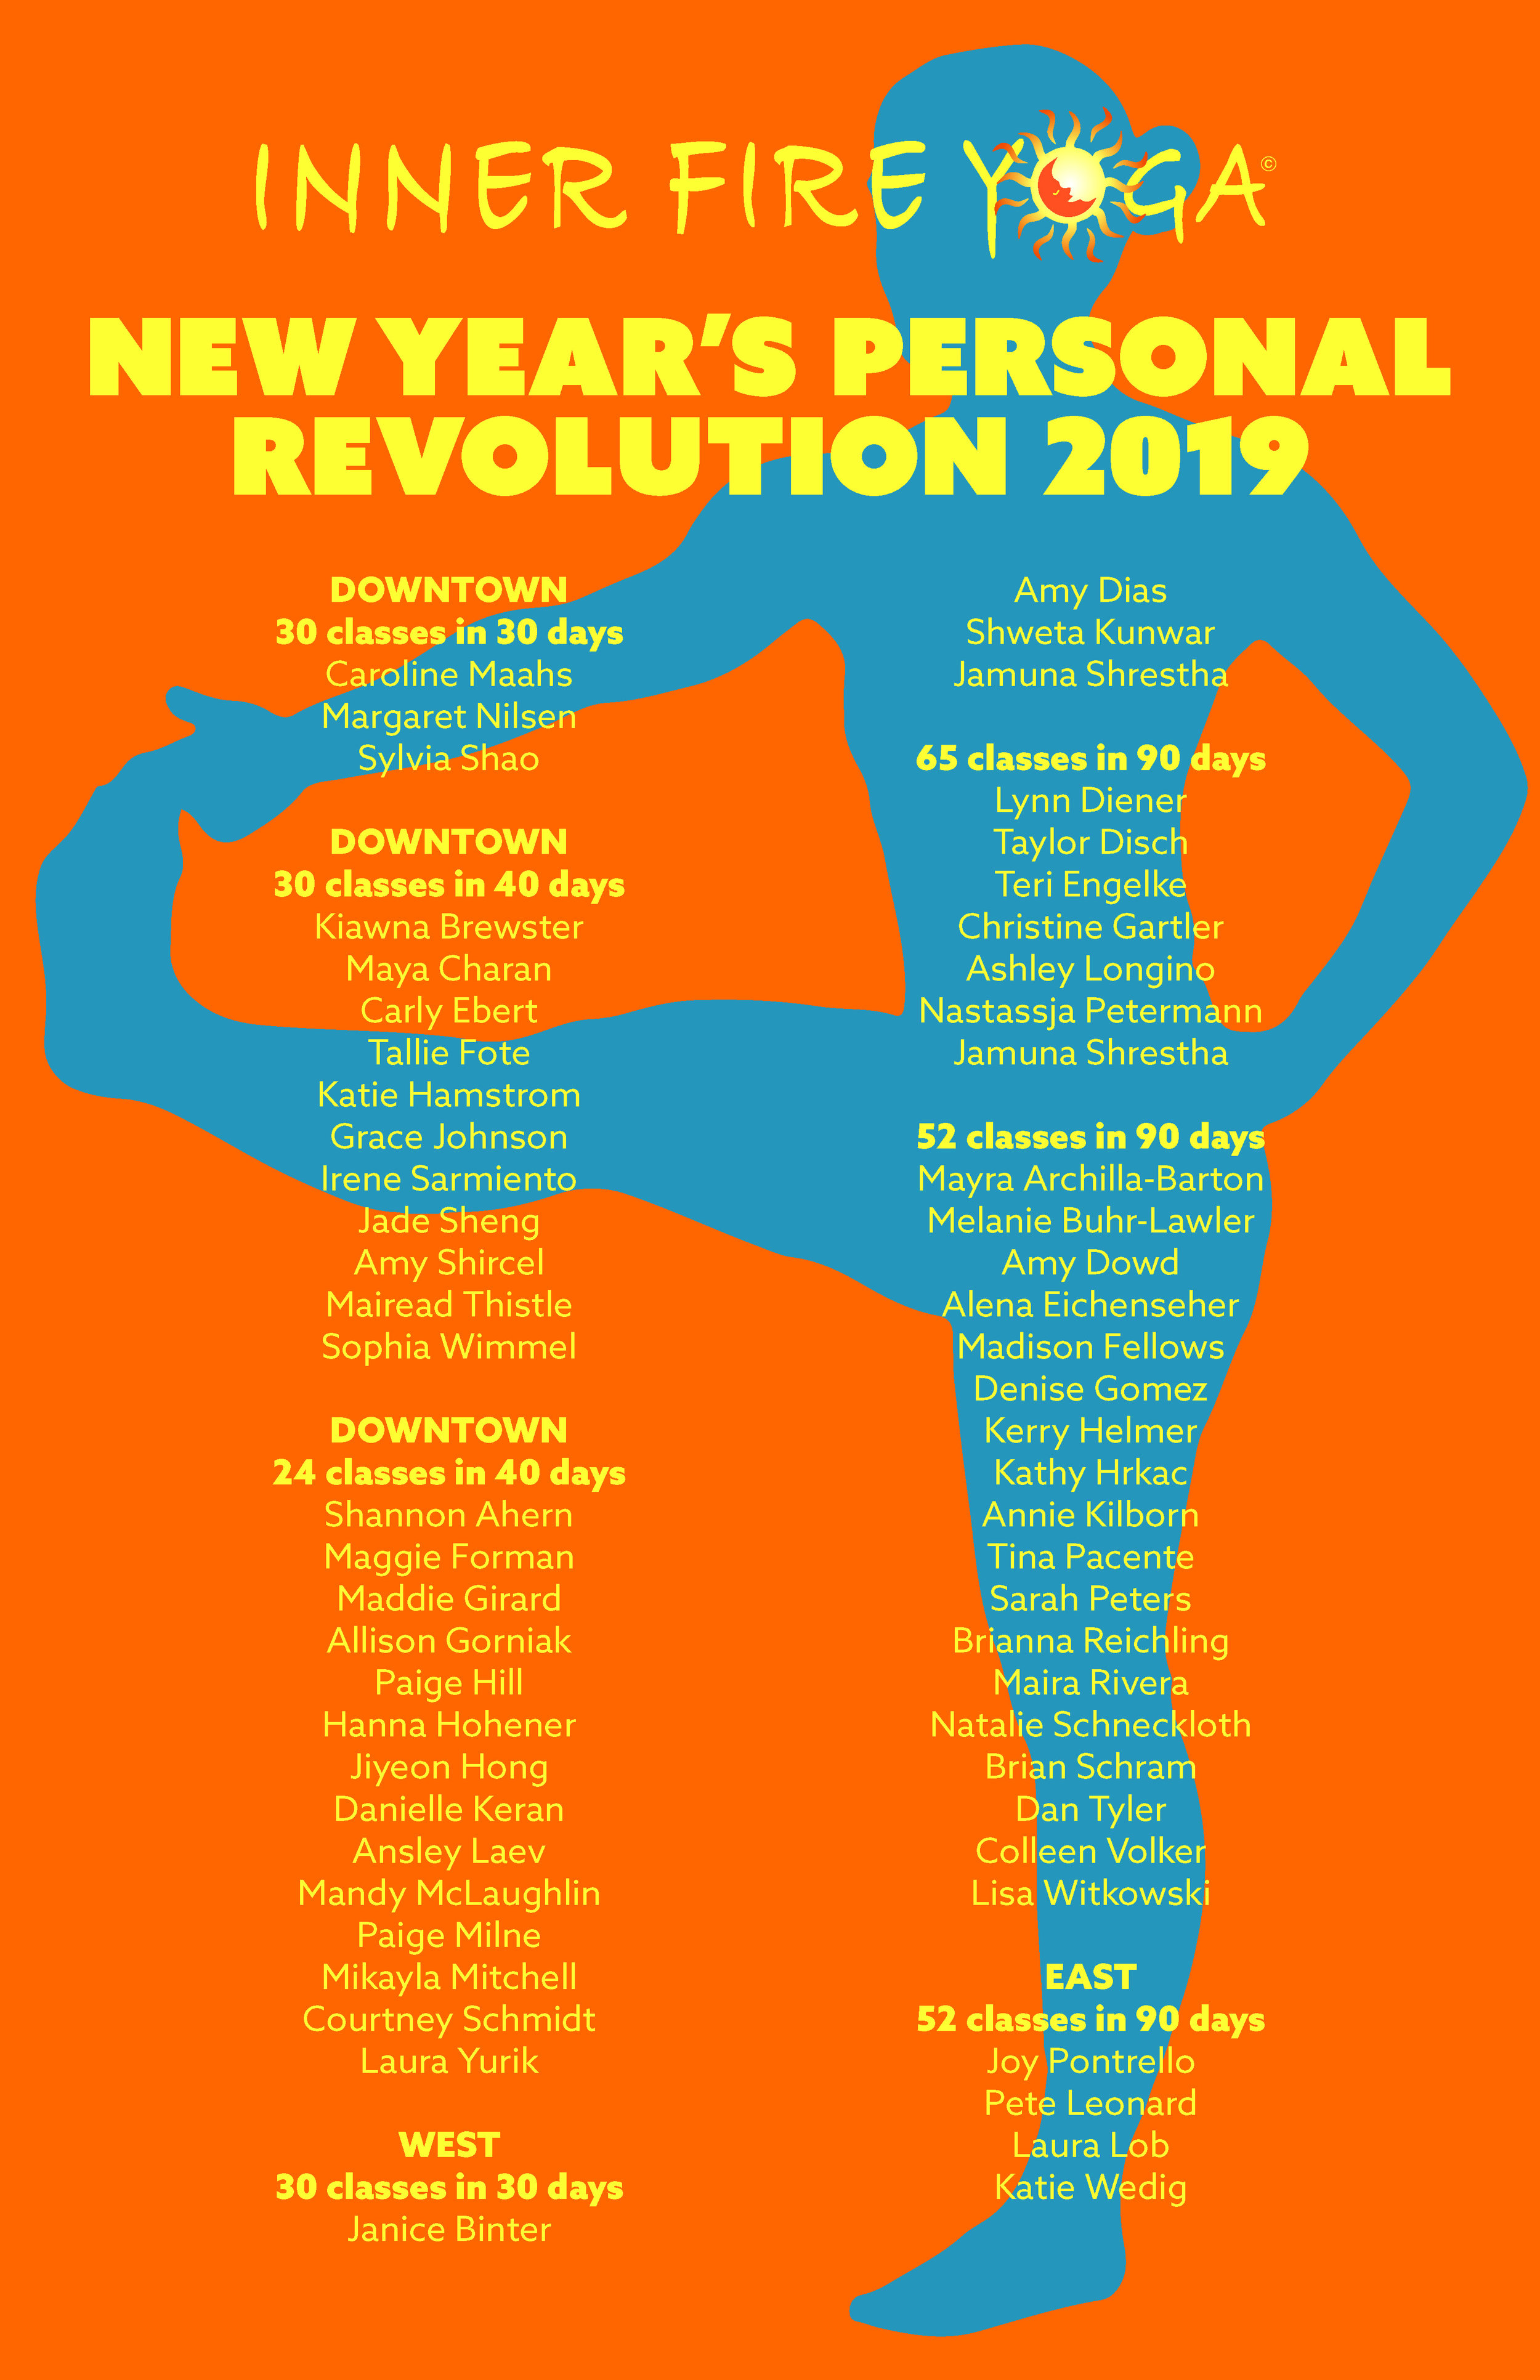 19-5-15 revolution wall poster.jpg